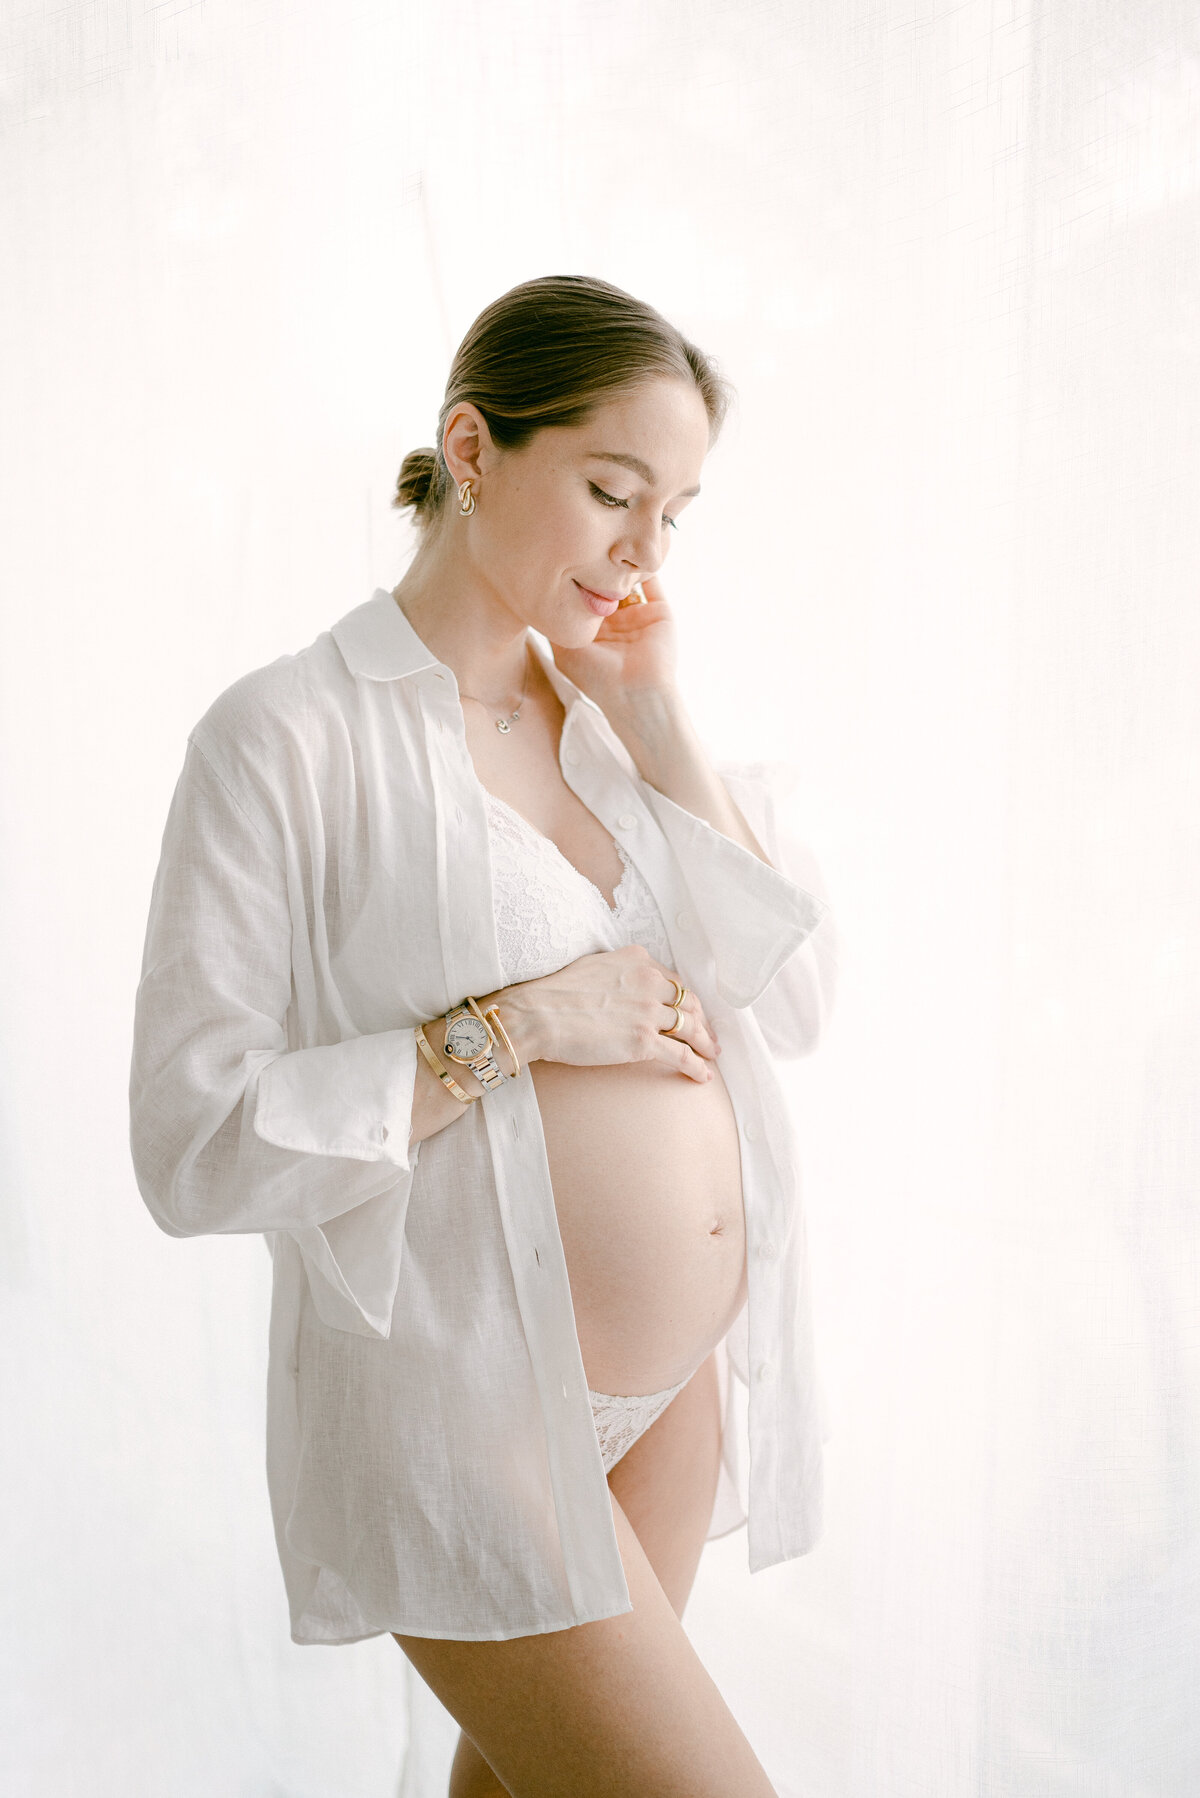 Intimate Maternity session in Miami